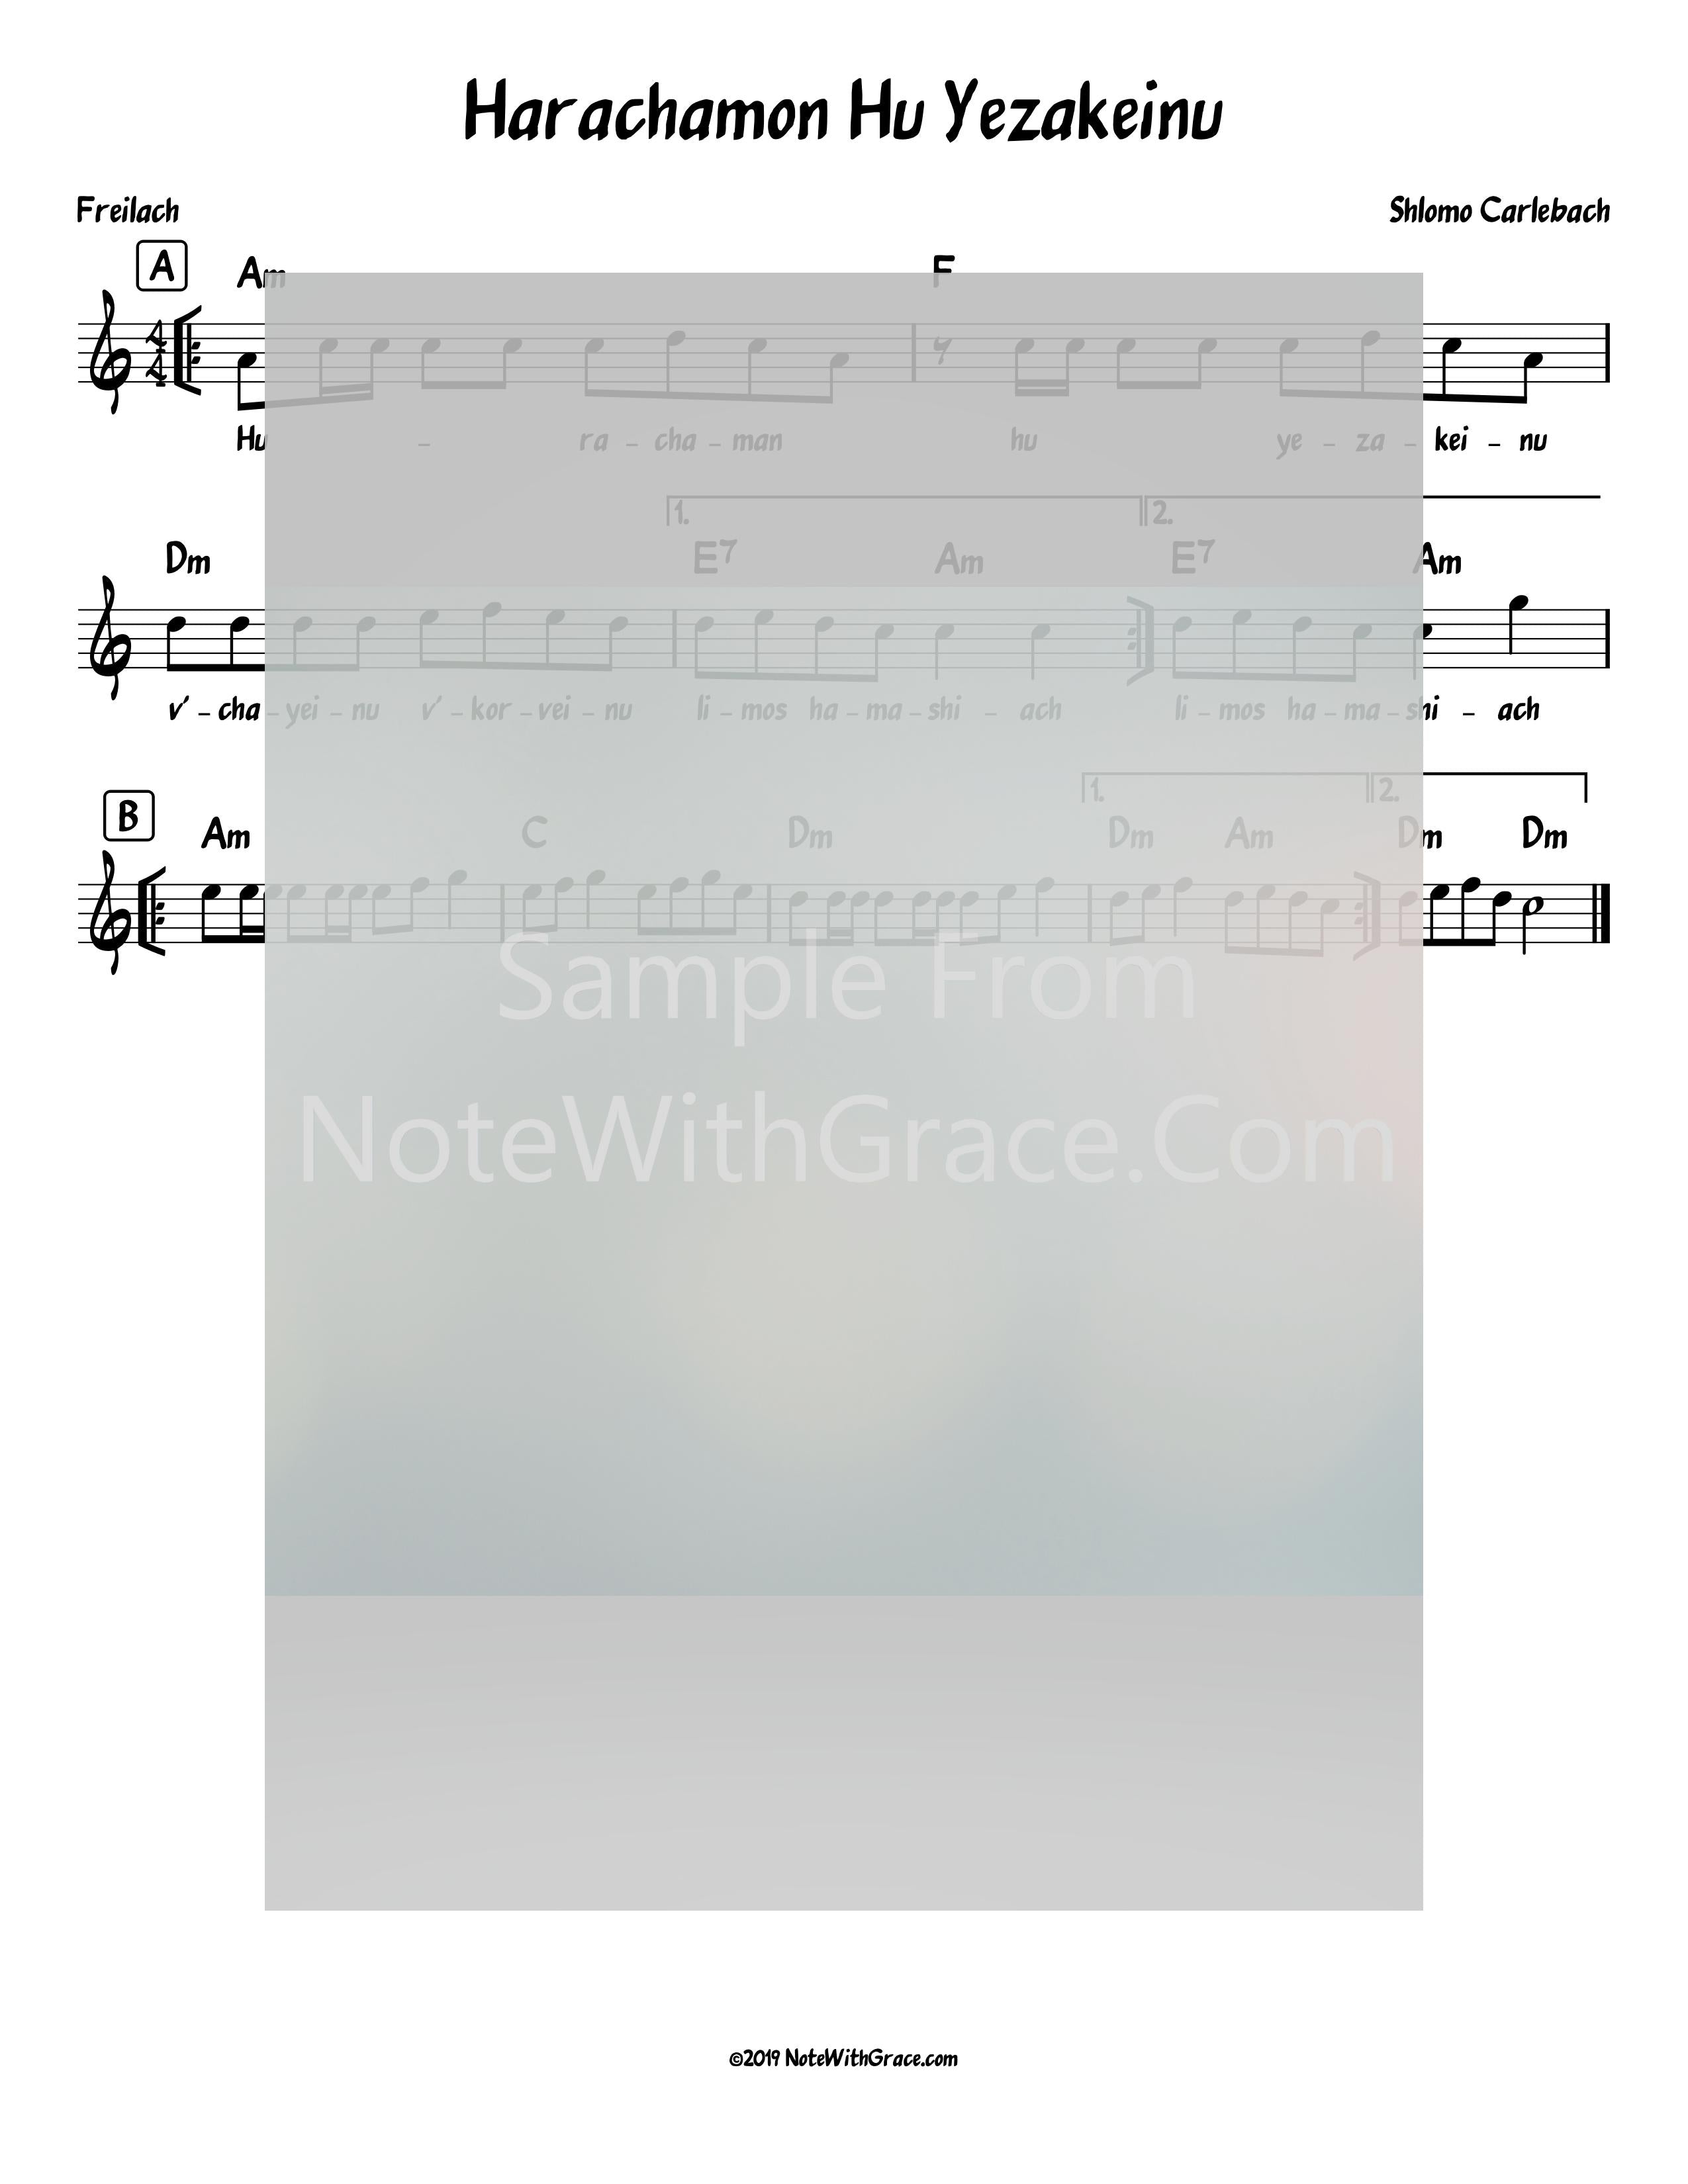 Horachamon Hu Y'zakeinu Lead Sheet (Shlomo Carlebach)-Sheet music-NoteWithGrace.com